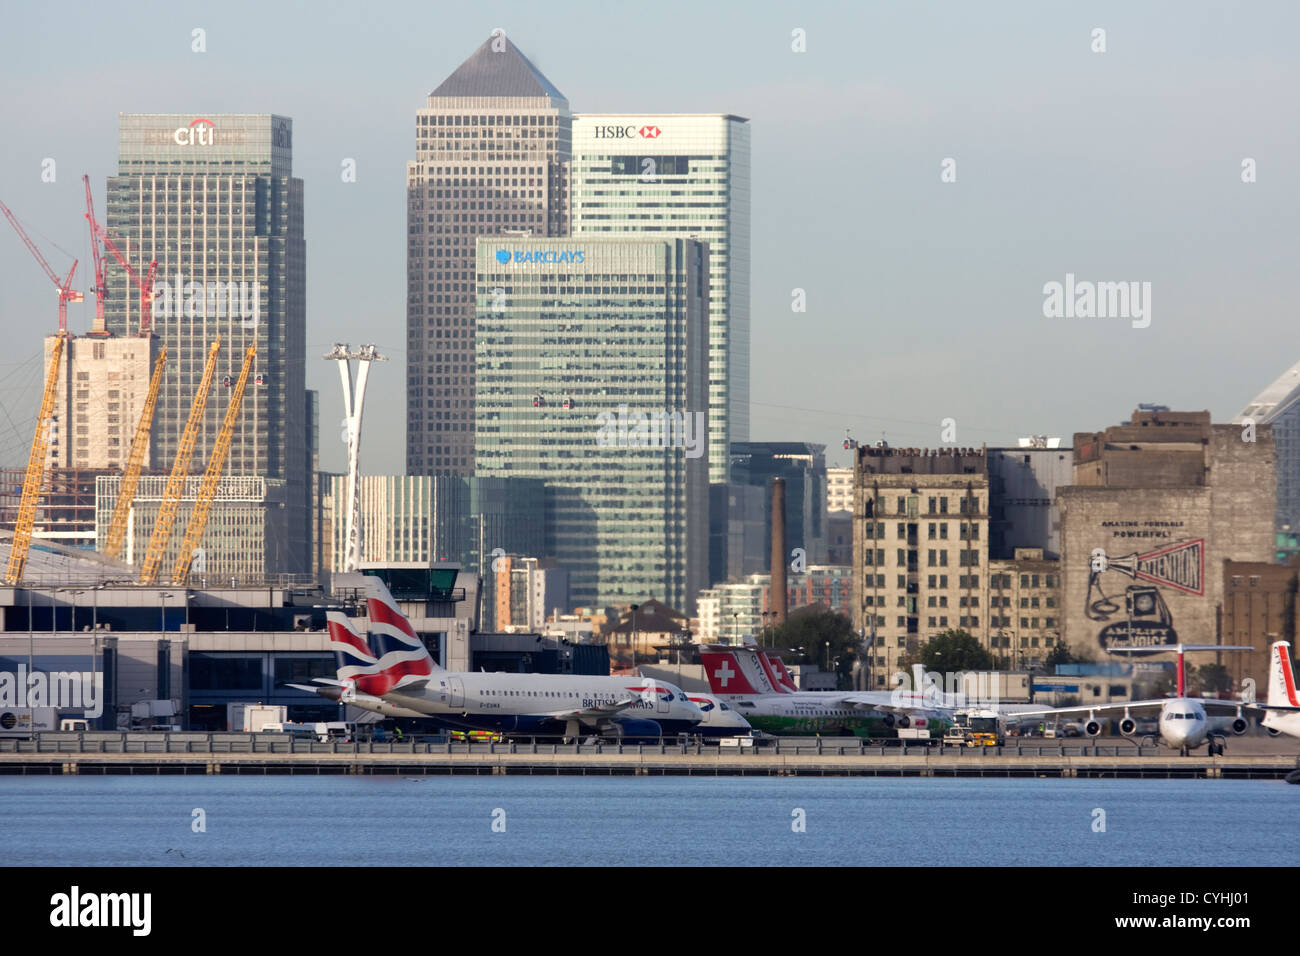 Gli aerei di linea regionale presso l'Aeroporto di London City. Canary Wharf e l'O2 in background, England, Regno Unito Foto Stock